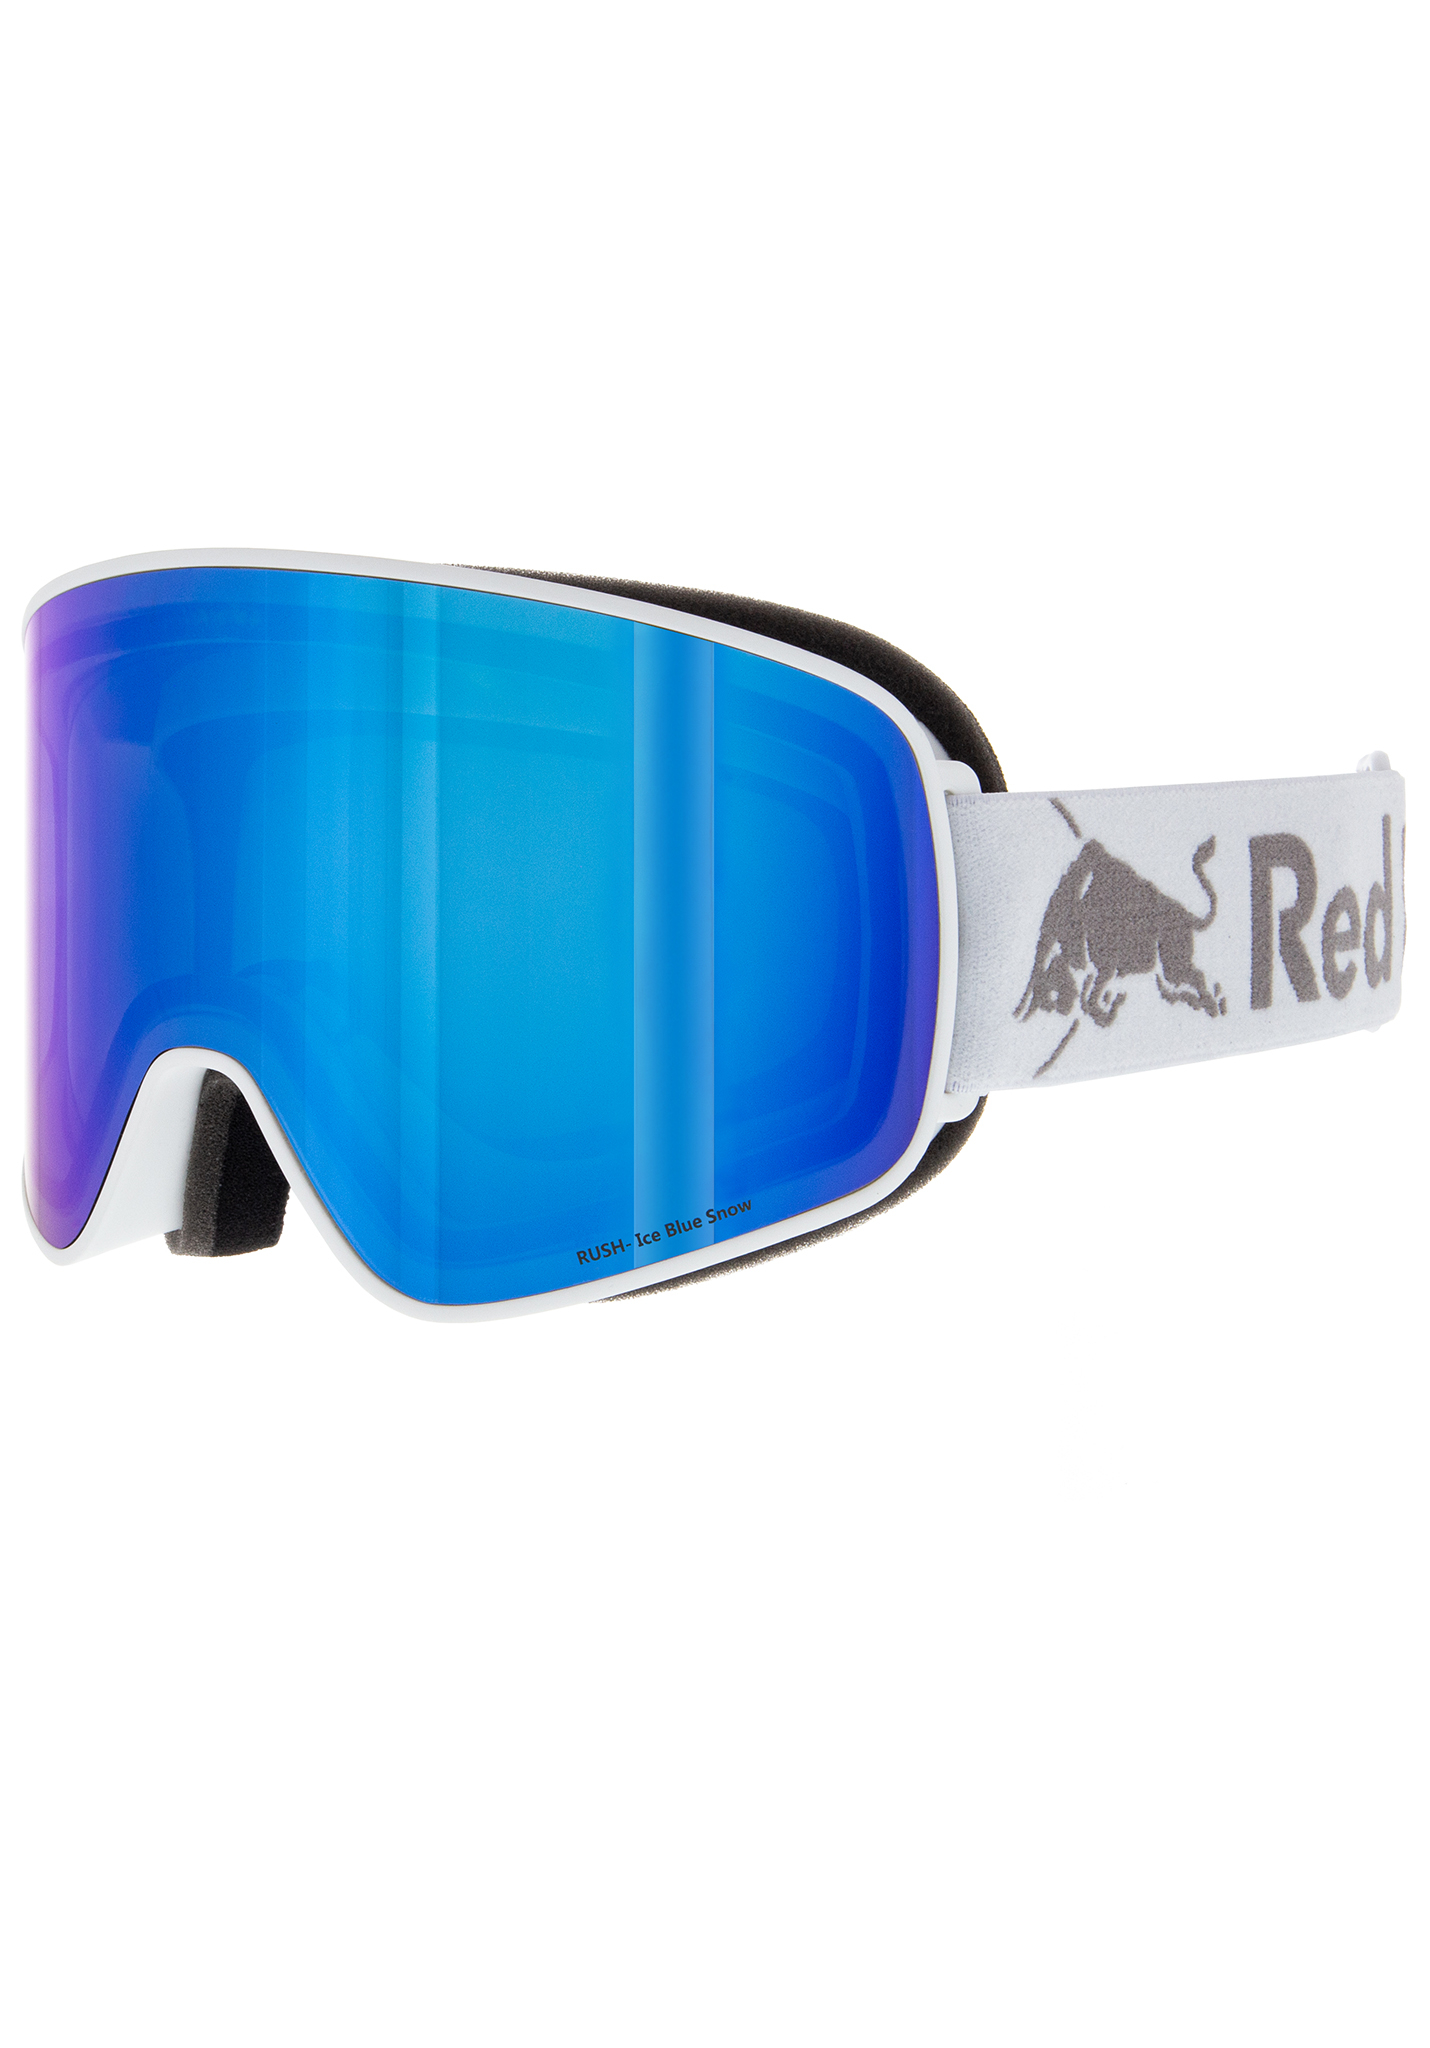 Red Bull SPECT Eyewear Rush Snowboardbrillen weiß/eisblauer schnee, rot mit blauem spiegel One Size